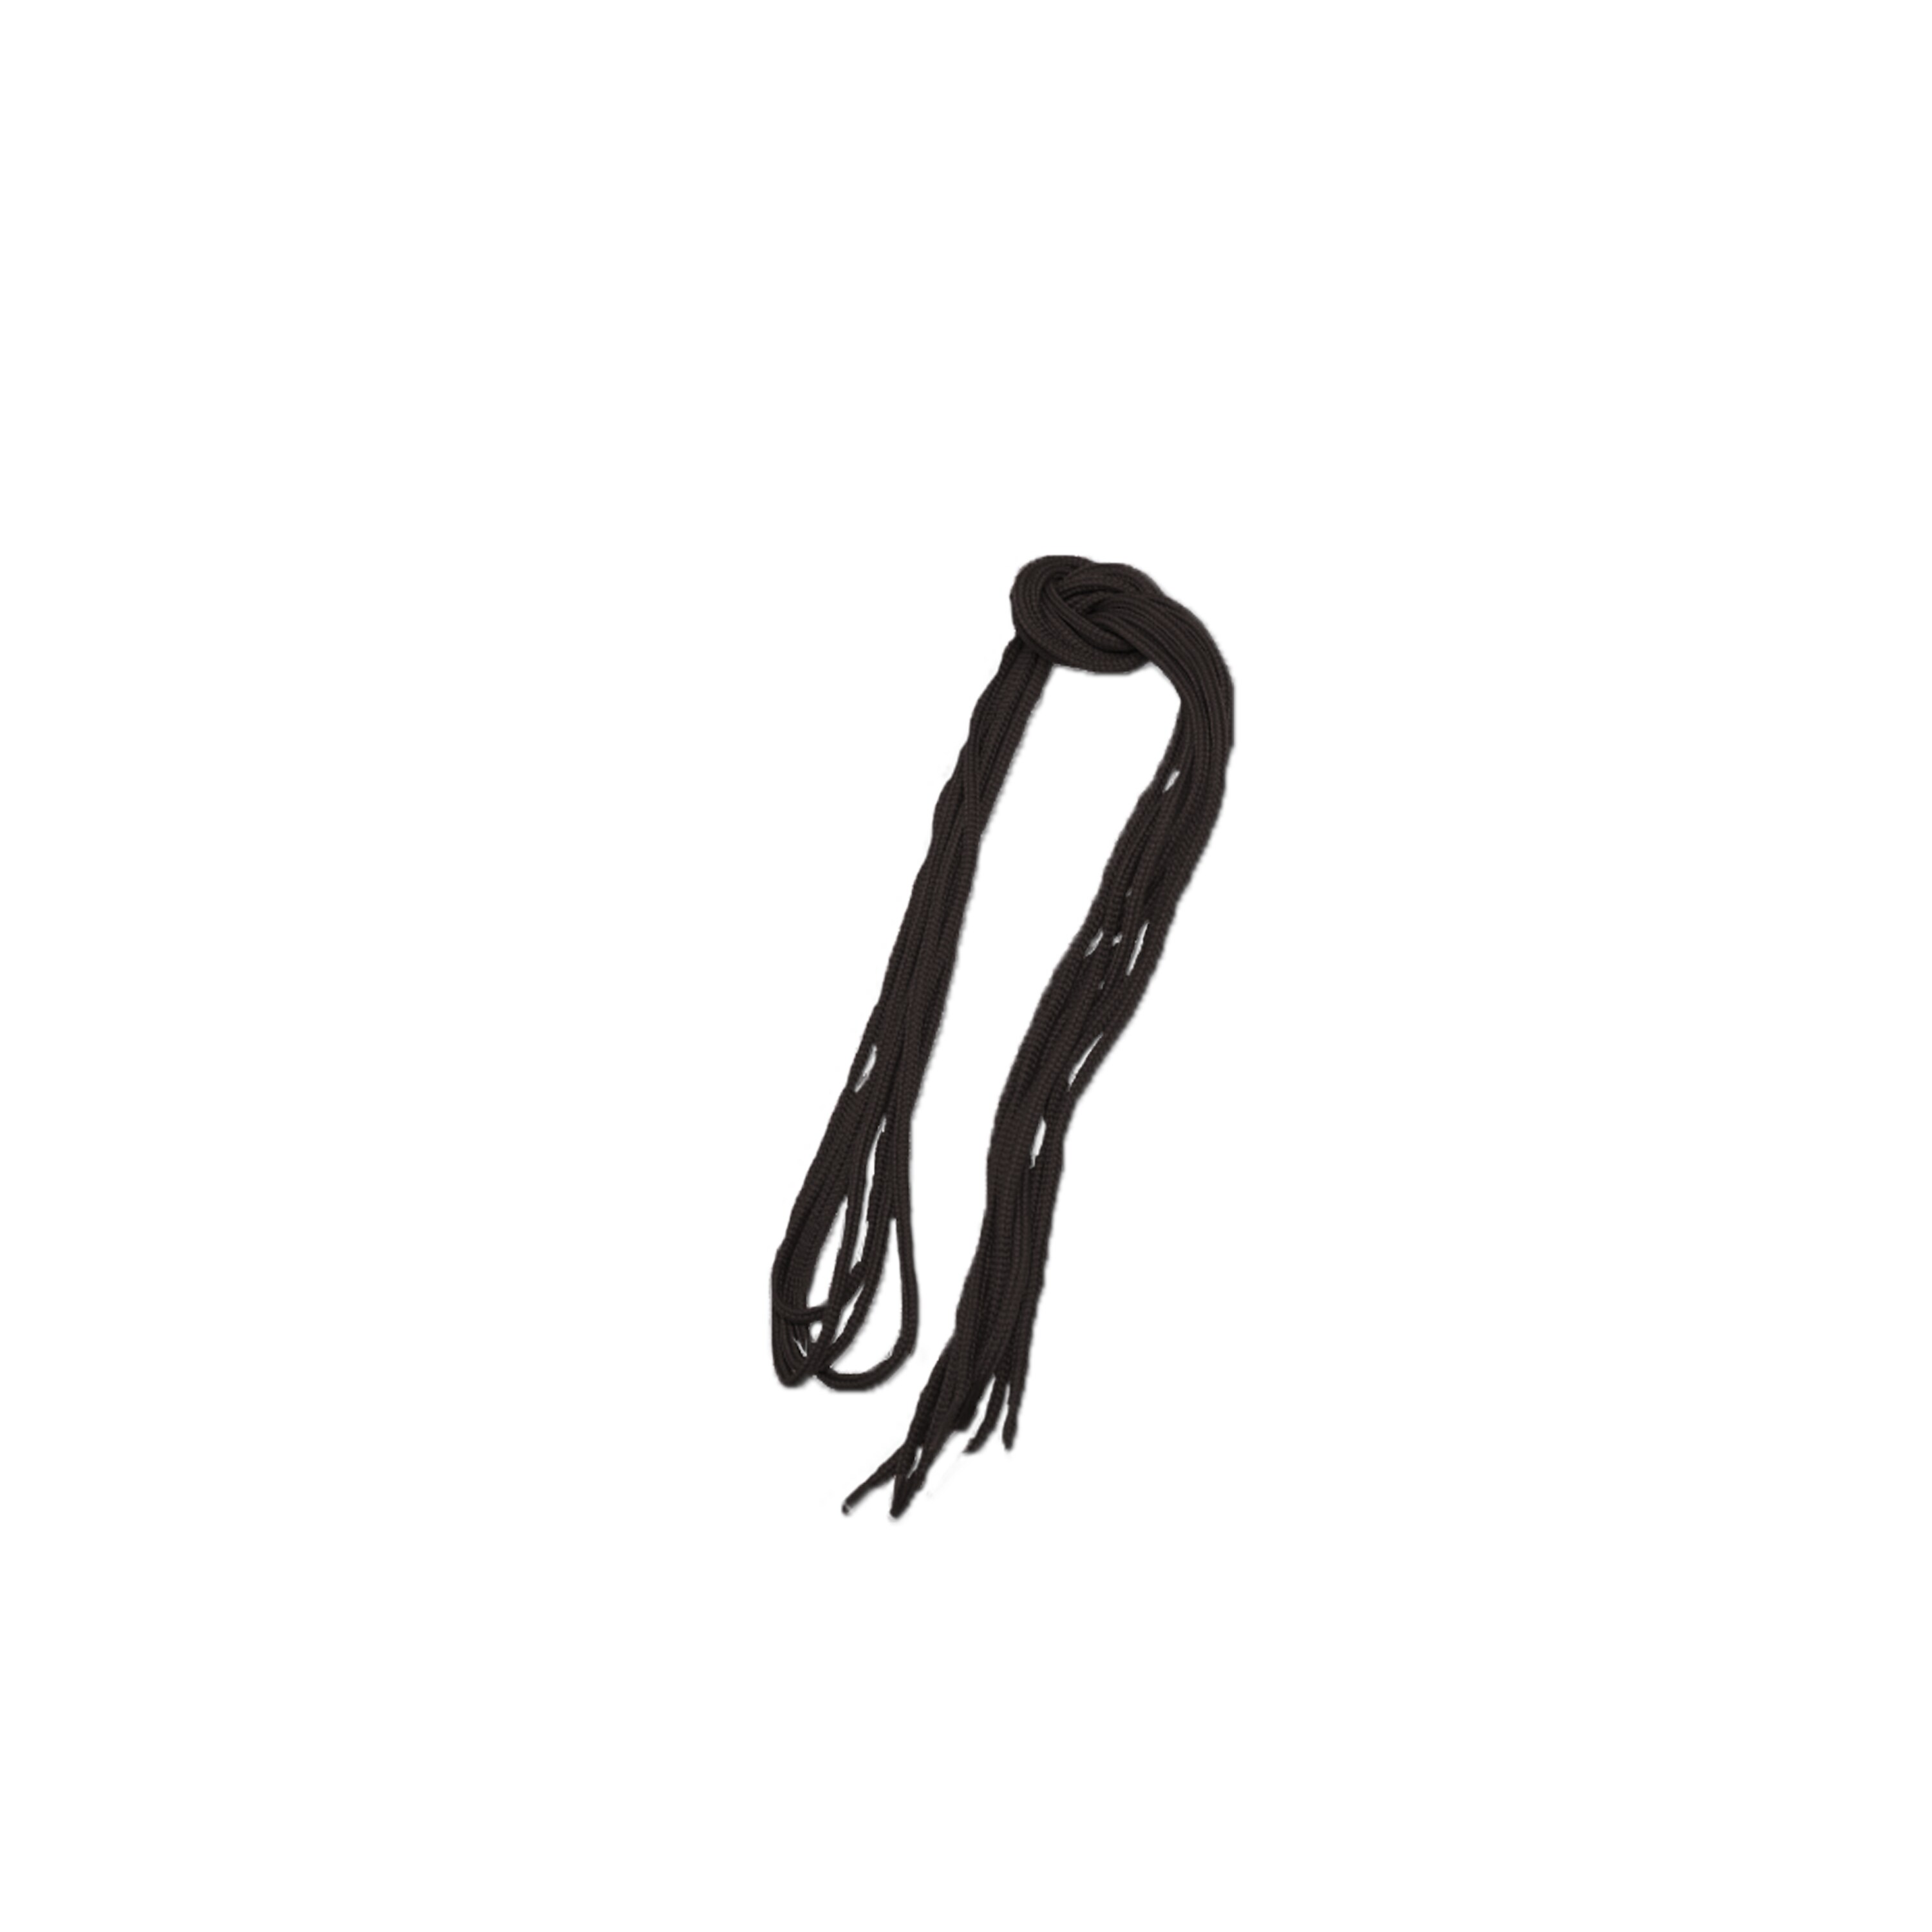 Cordones negros 80 cm | Cordones negros 80 cm | Cuidado del calzado